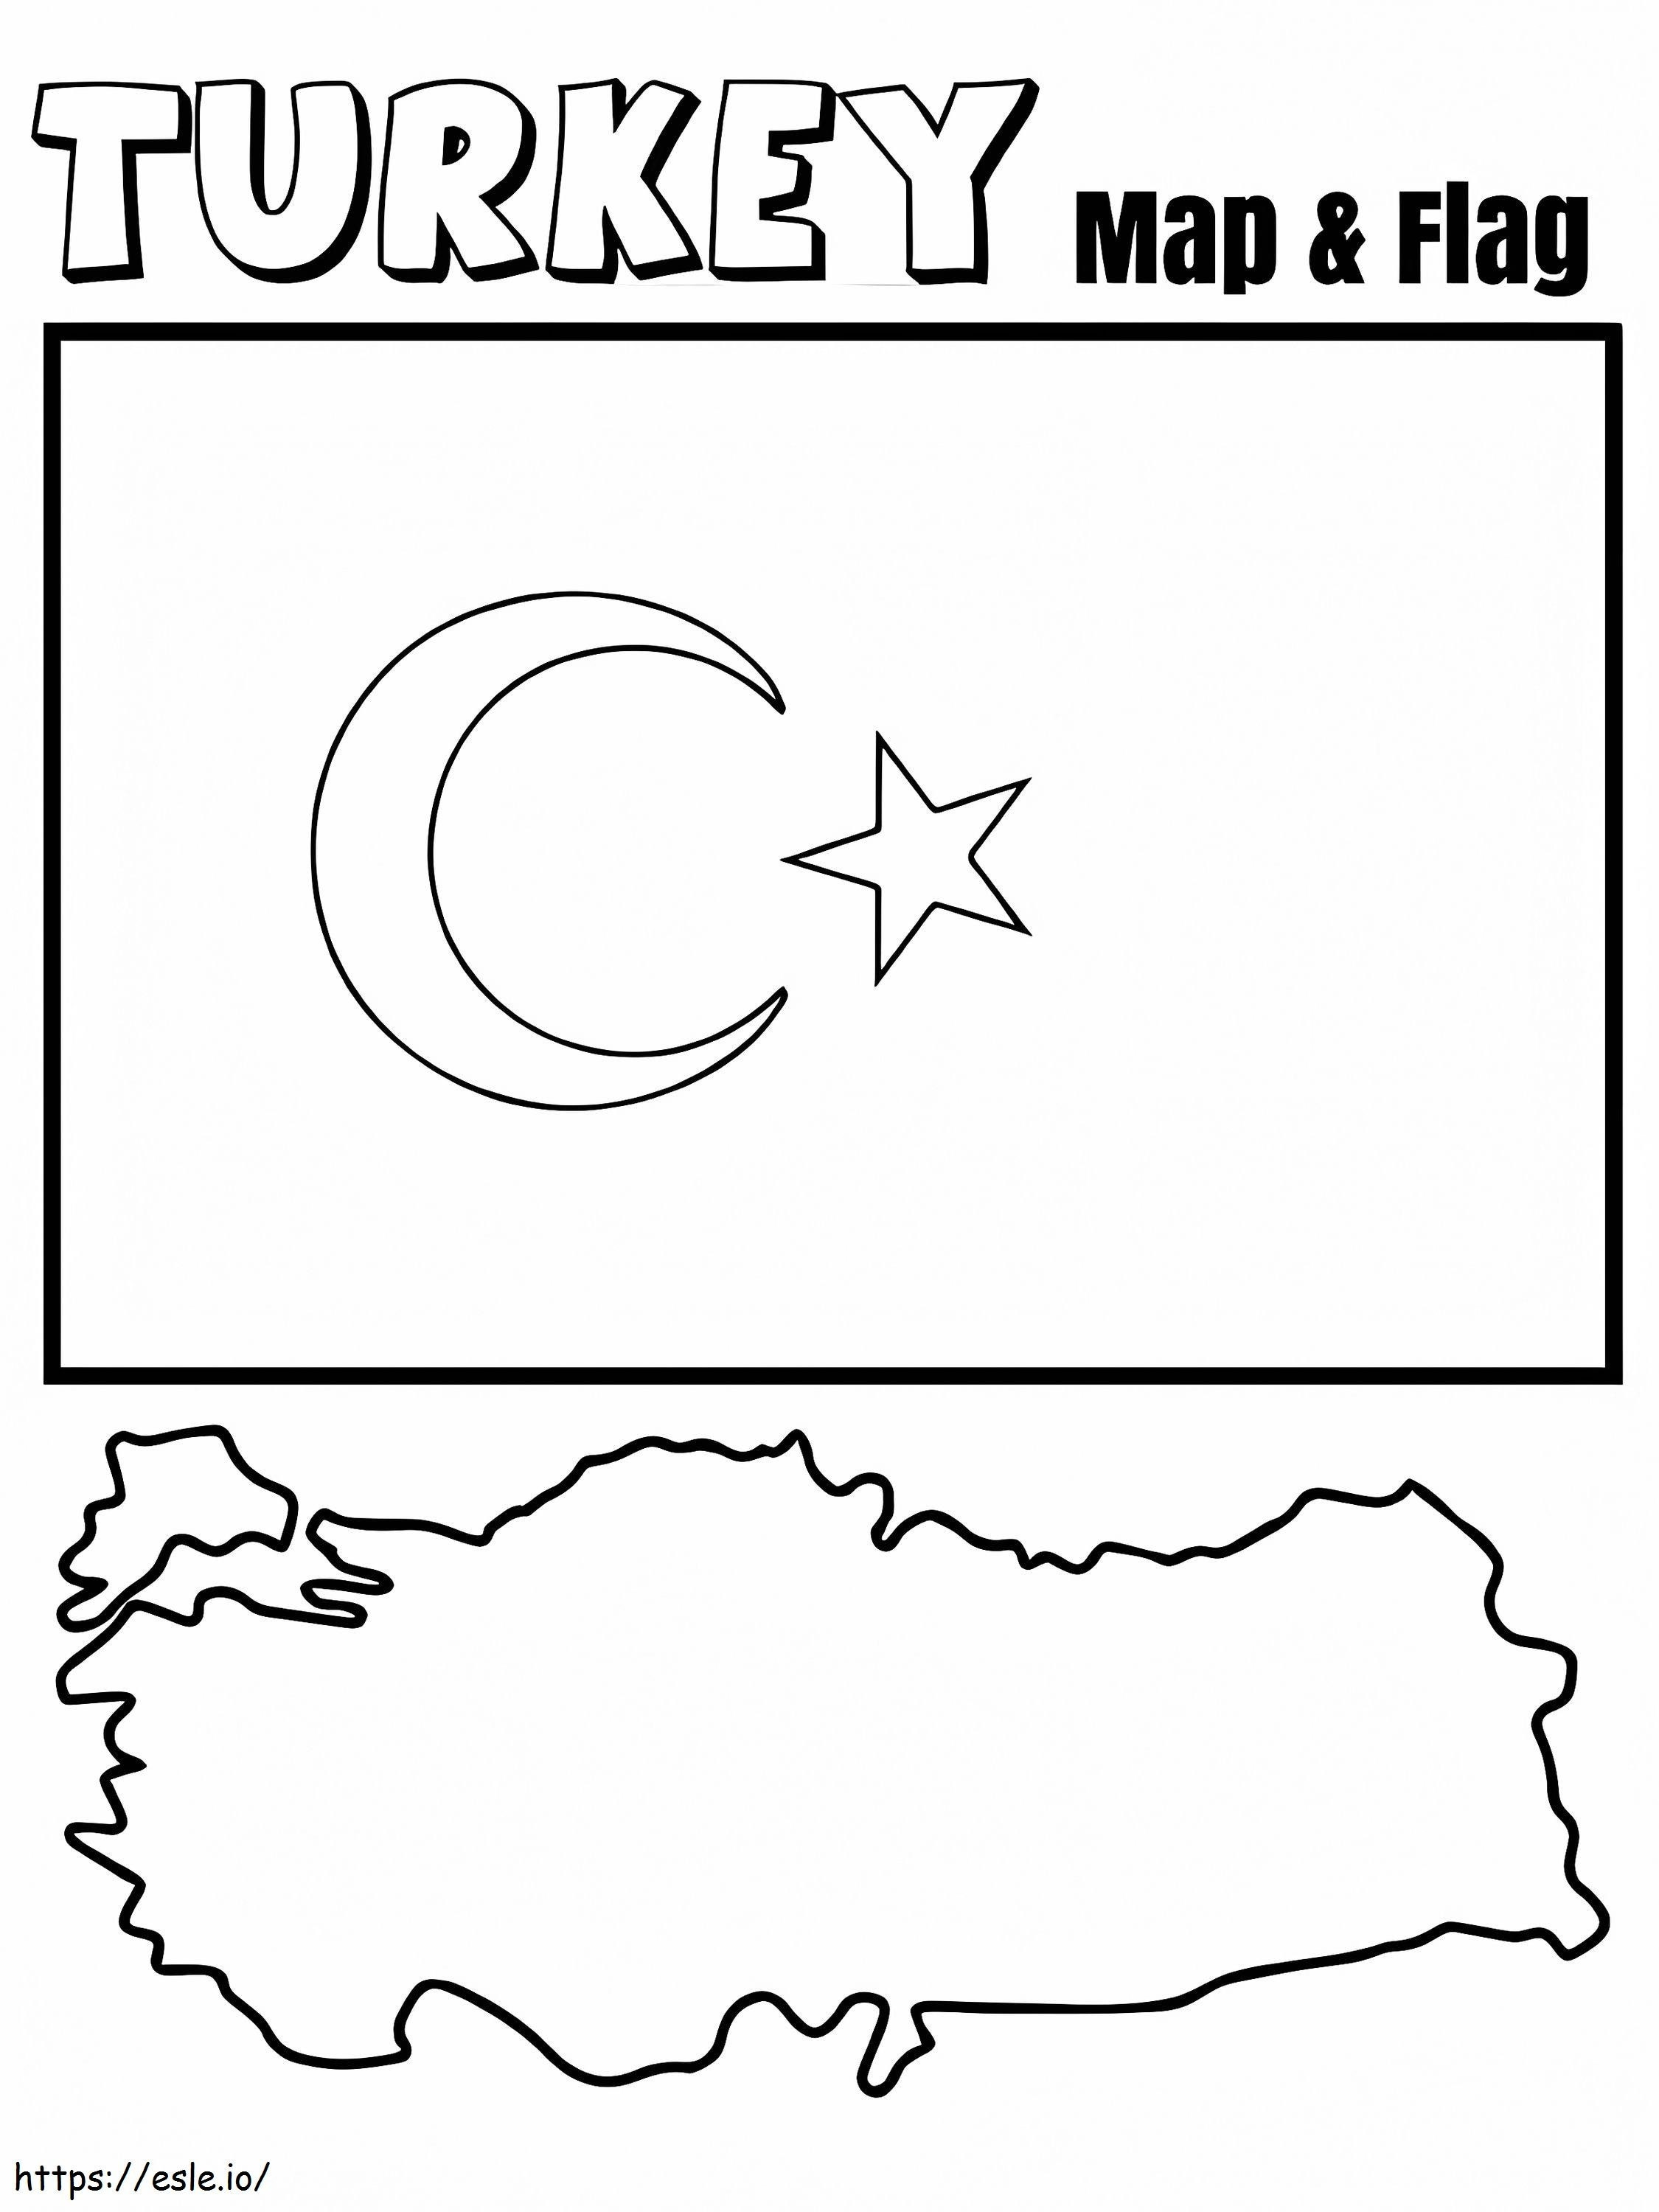 Mapa y bandera de Turquía para colorear